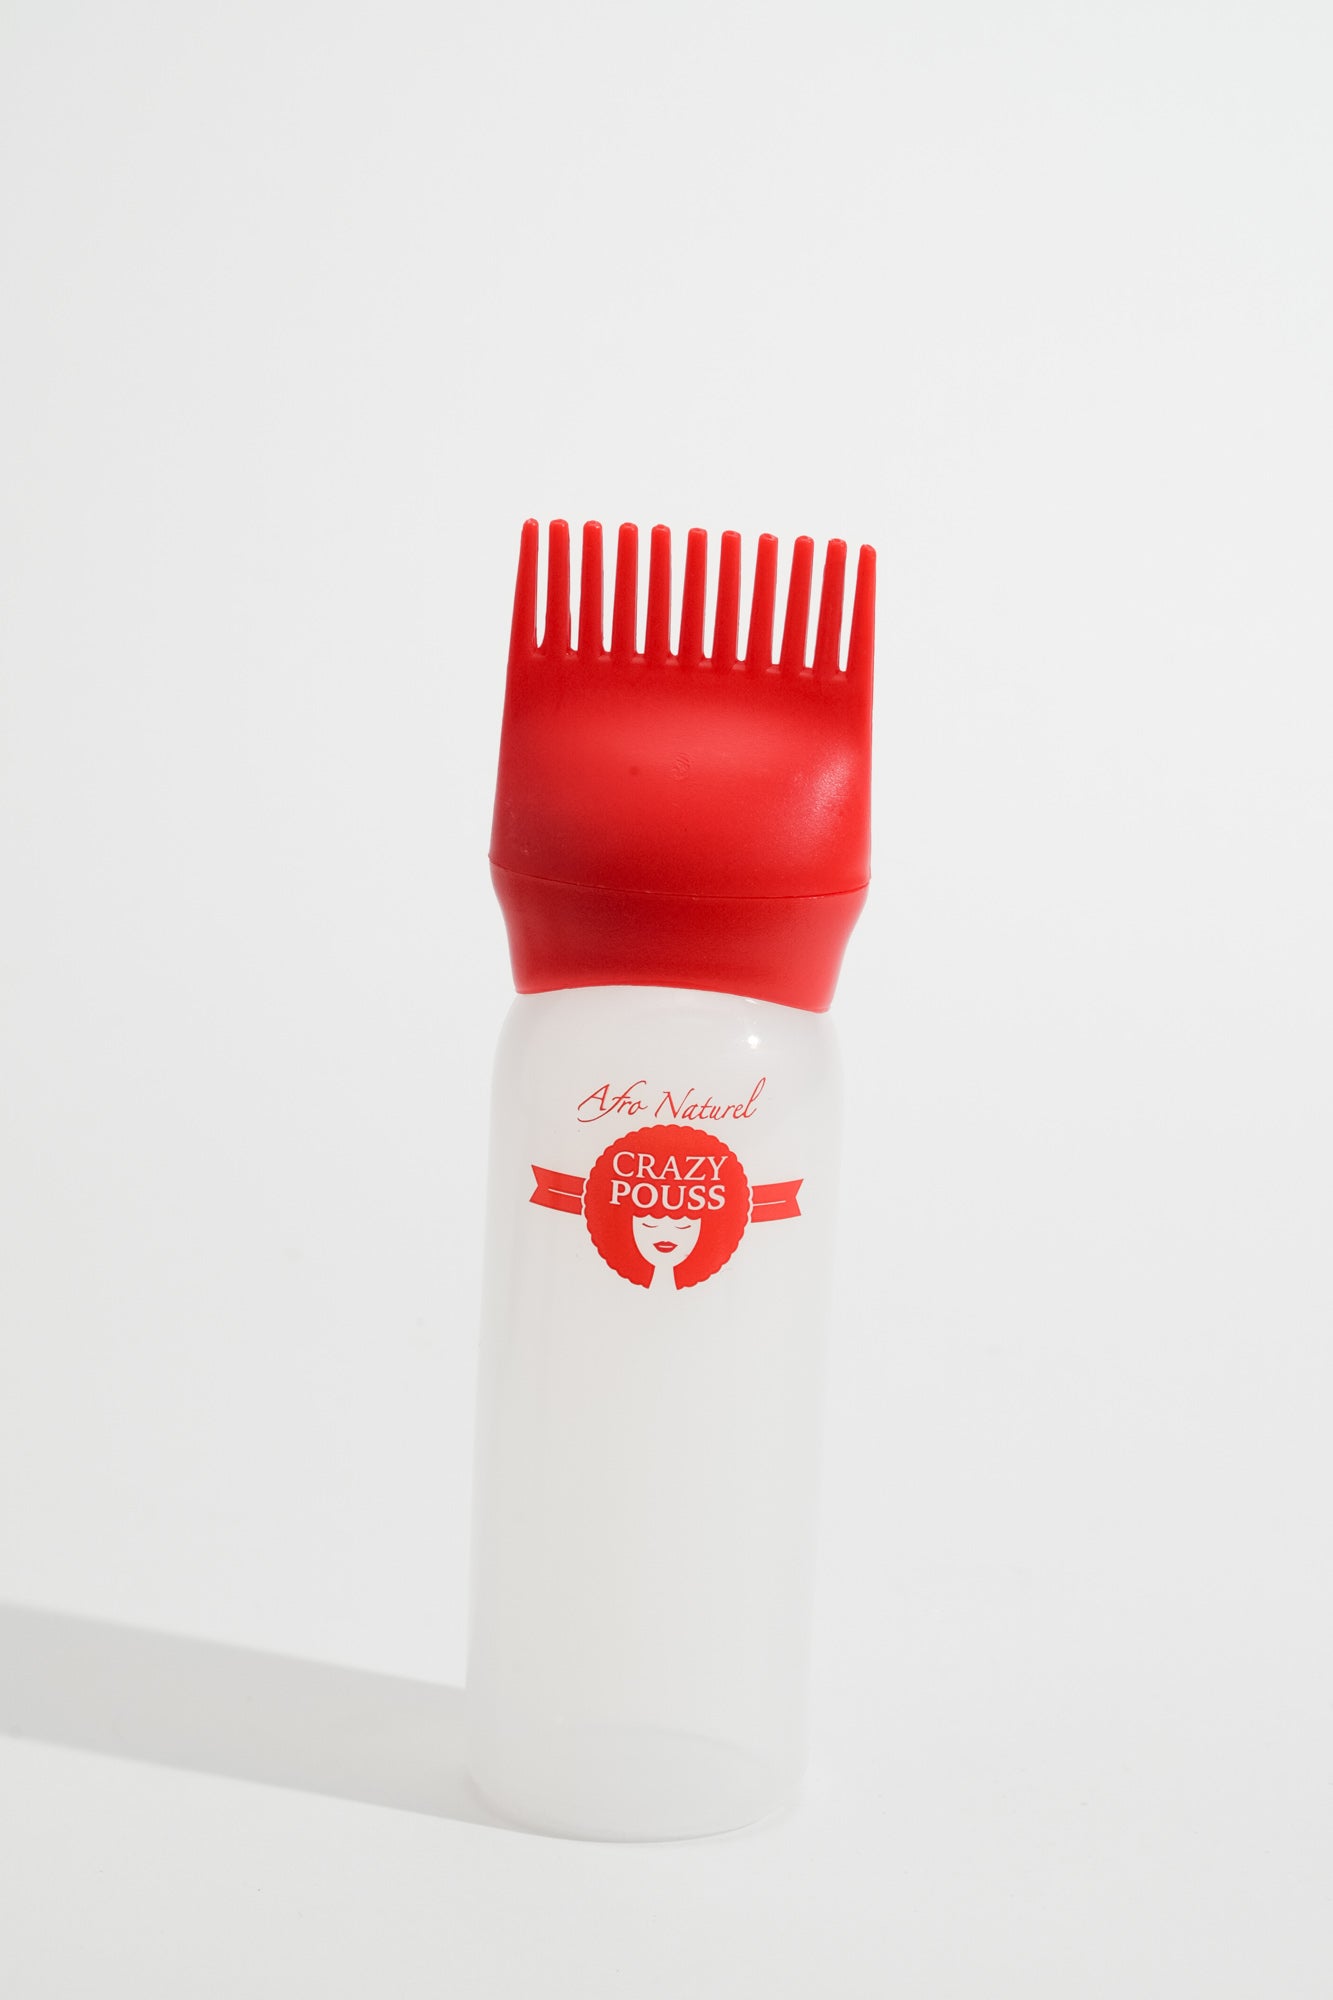 CRAZY POUSS - Flacon applicateur d'huiles - Rouge et blanc - Accessoire avec embout pour appliquer les huiles sur vos cheveux